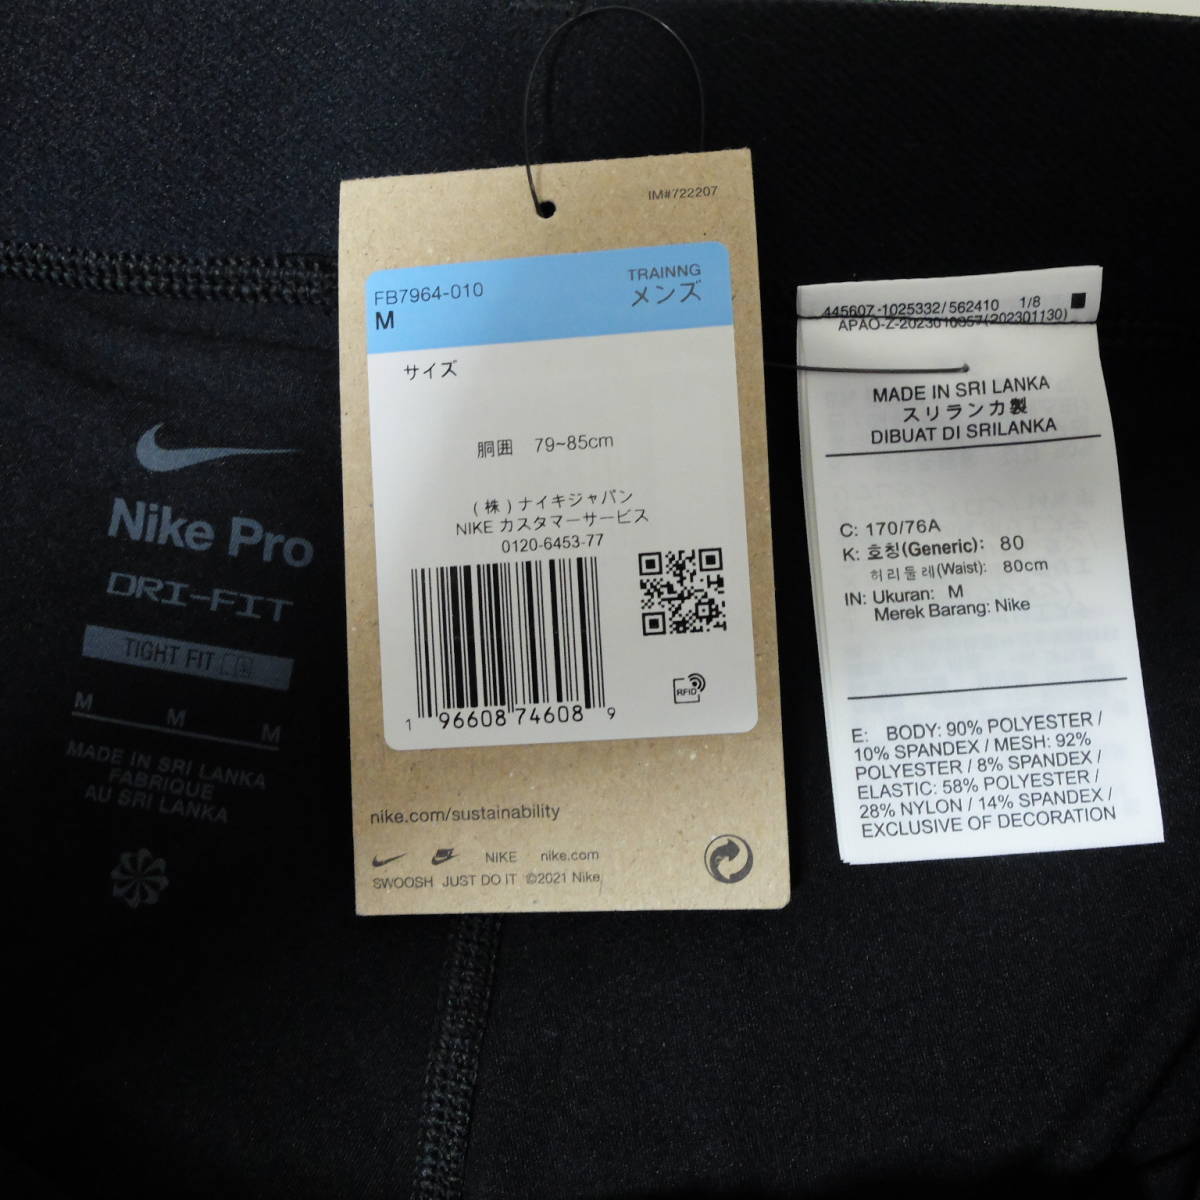 [新品 送料込] メンズM ナイキ Dri-FIT フィットネス ロングショートパンツ FB7964-010 Nike Pro Dri-FIT Men's 9' Shorts ショートタイツ_画像9